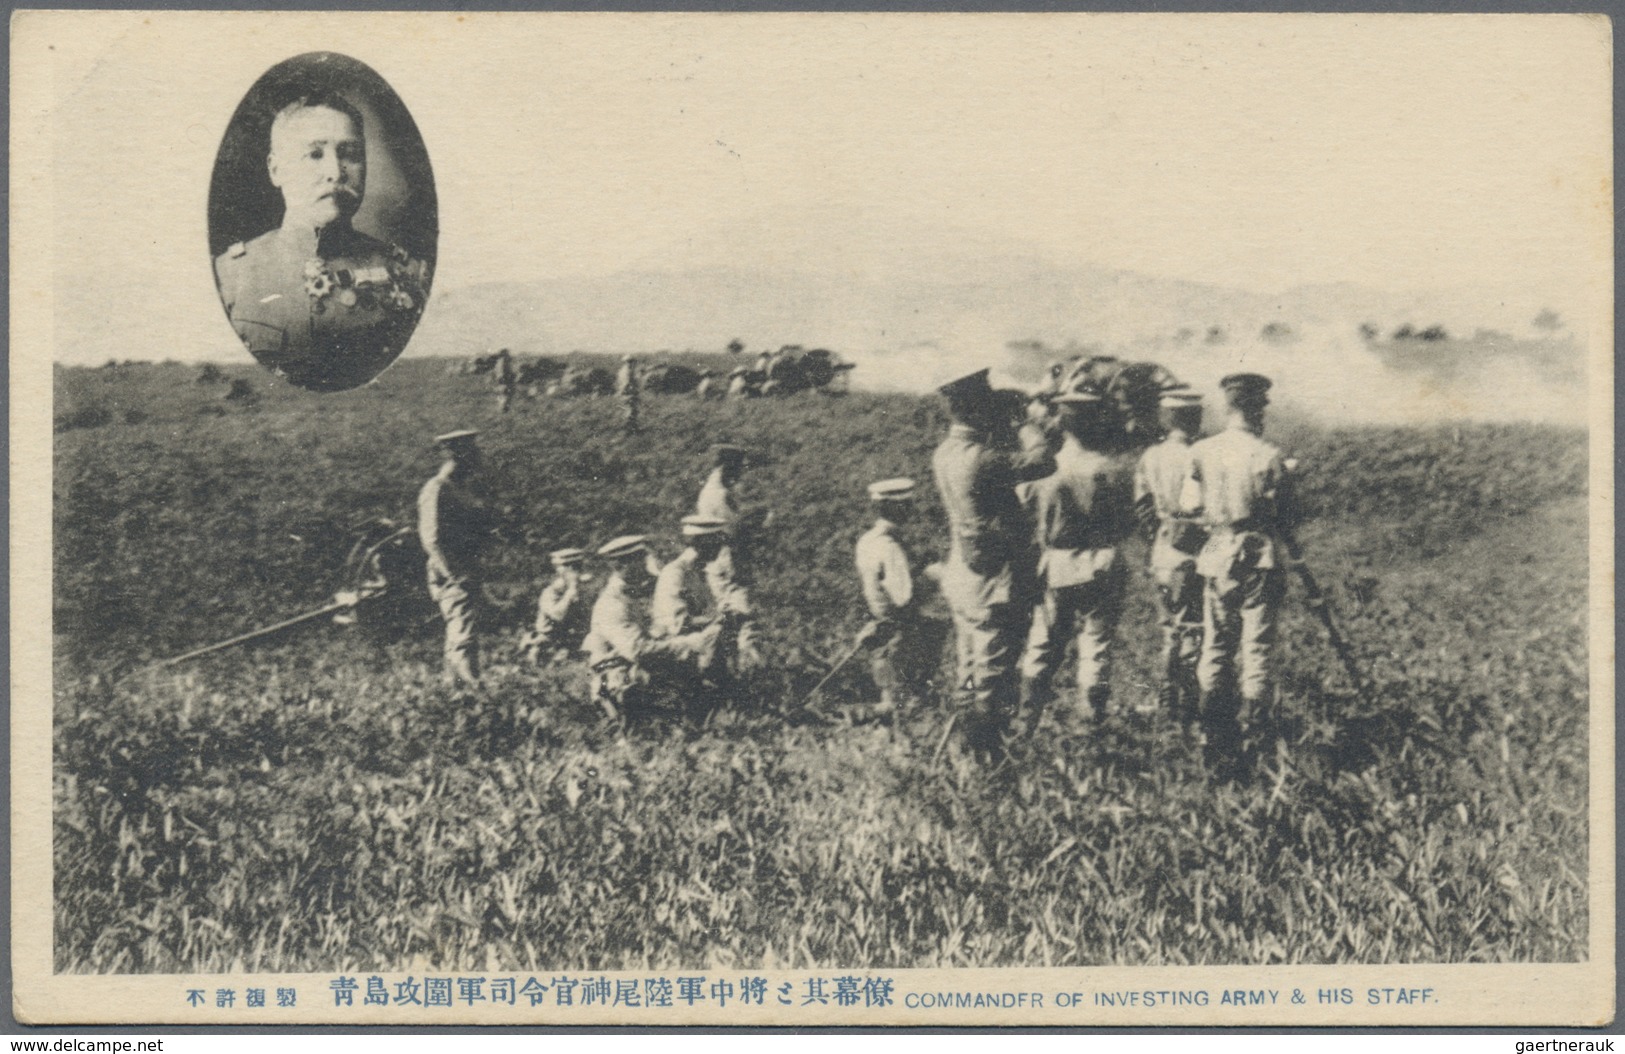 Br/ Lagerpost Tsingtau: 1915/19, ppc/cover (6 inc. one incoming from Germany to Tsingtau) POW photograph